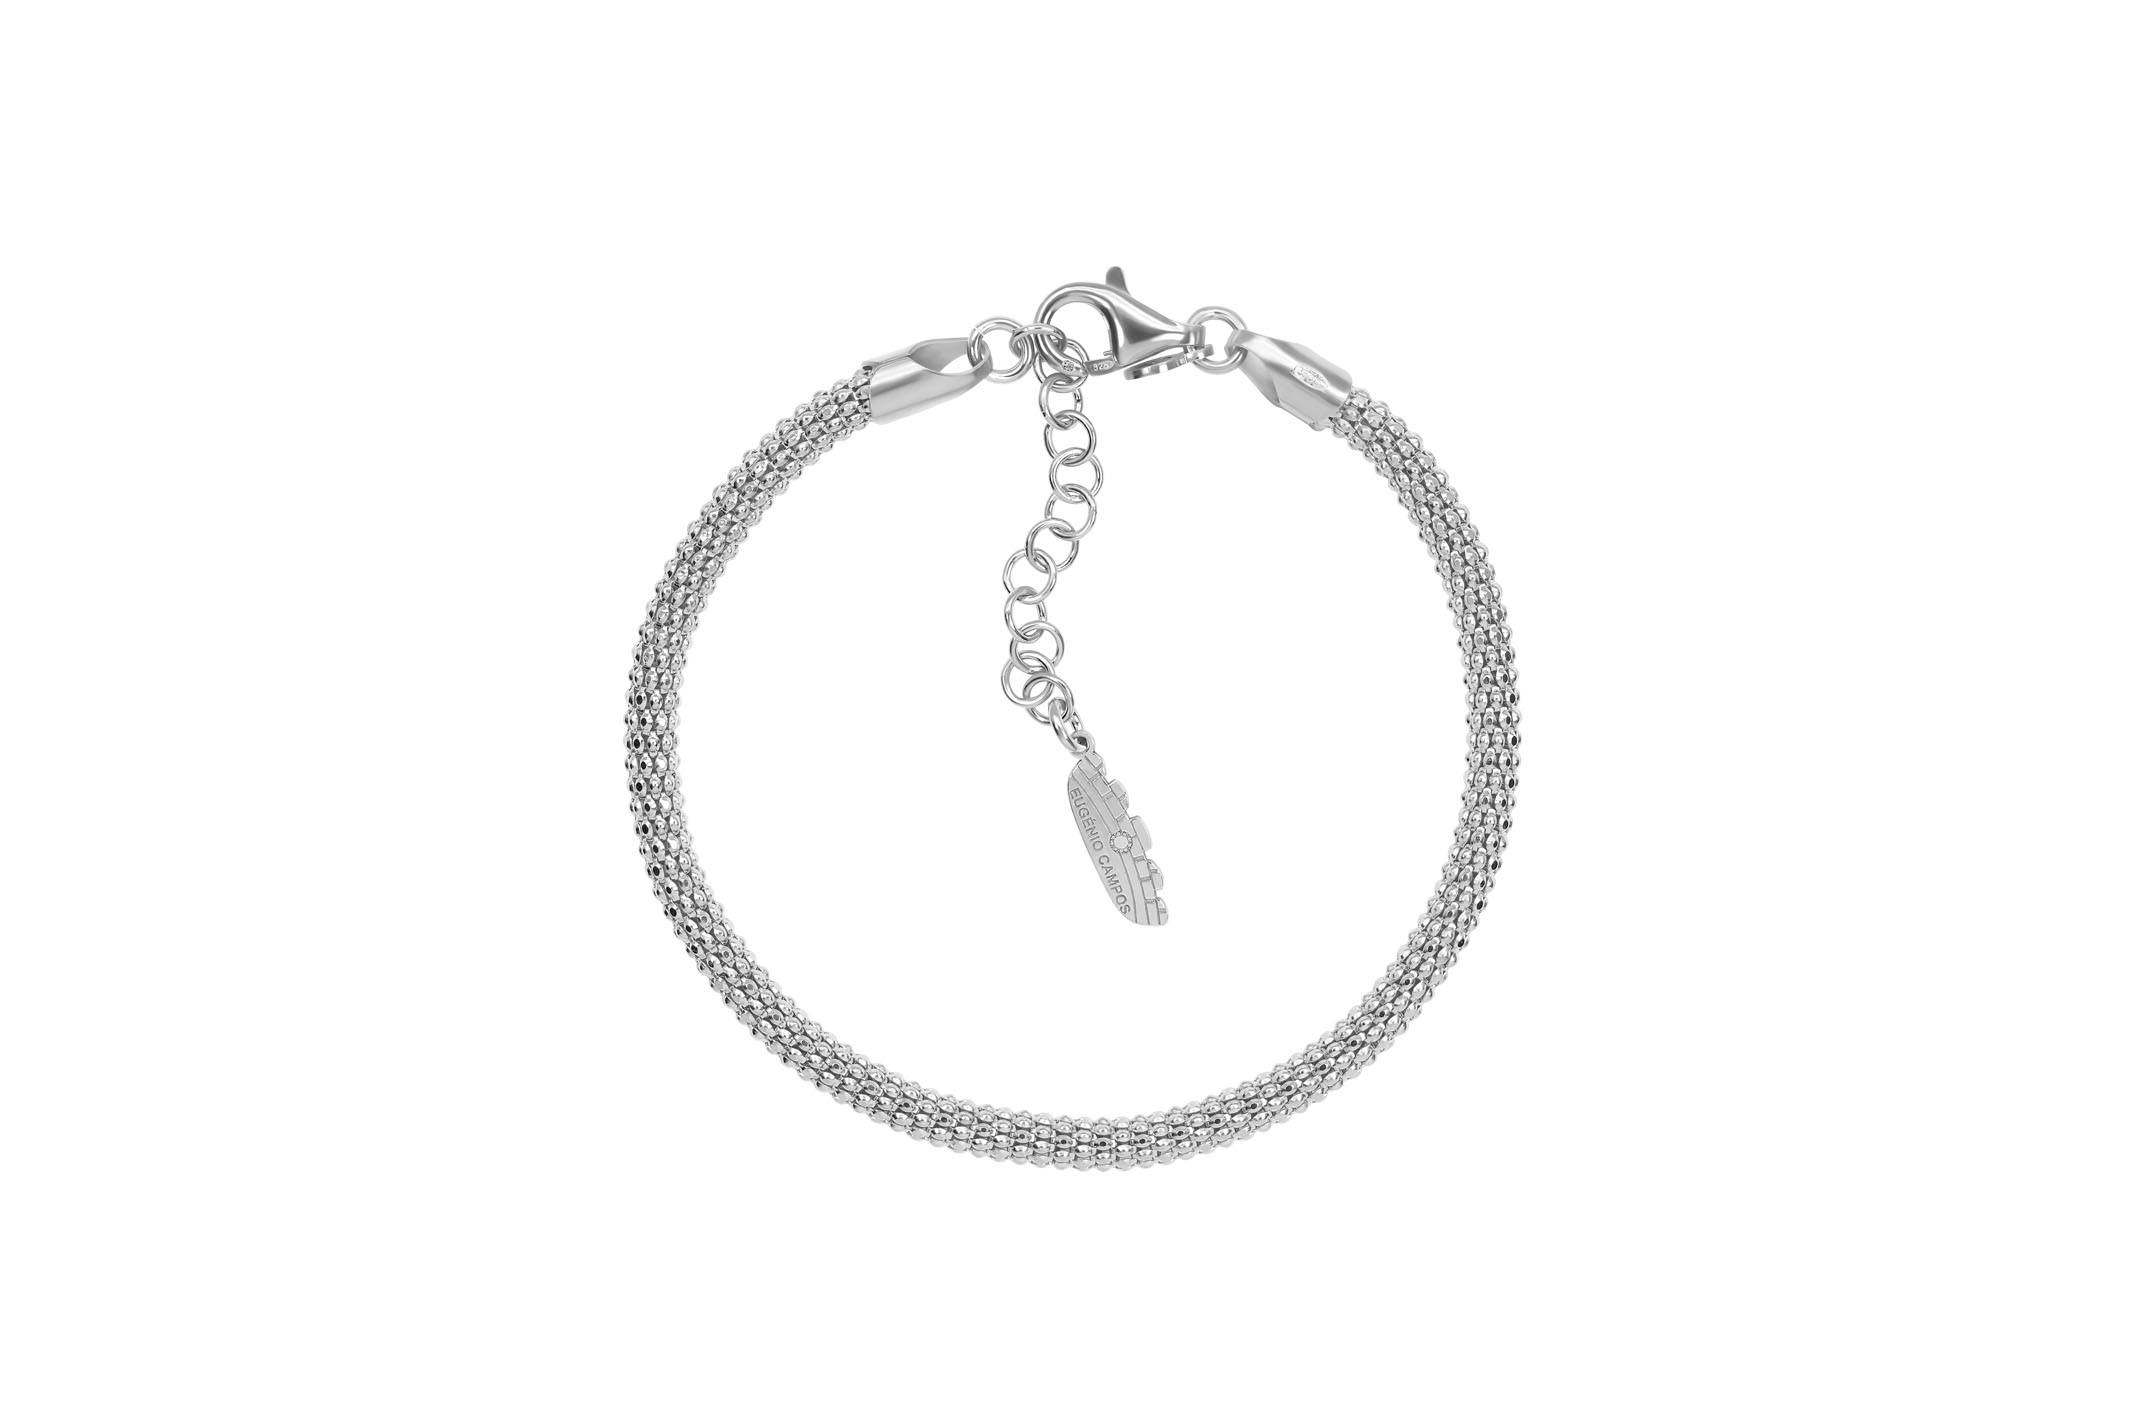 Joia: pulseira;Material: prata 925;Peso: 3.9 gr;Cor: branco;Medida: 17 cm + 3.5 cm;Género: mulher